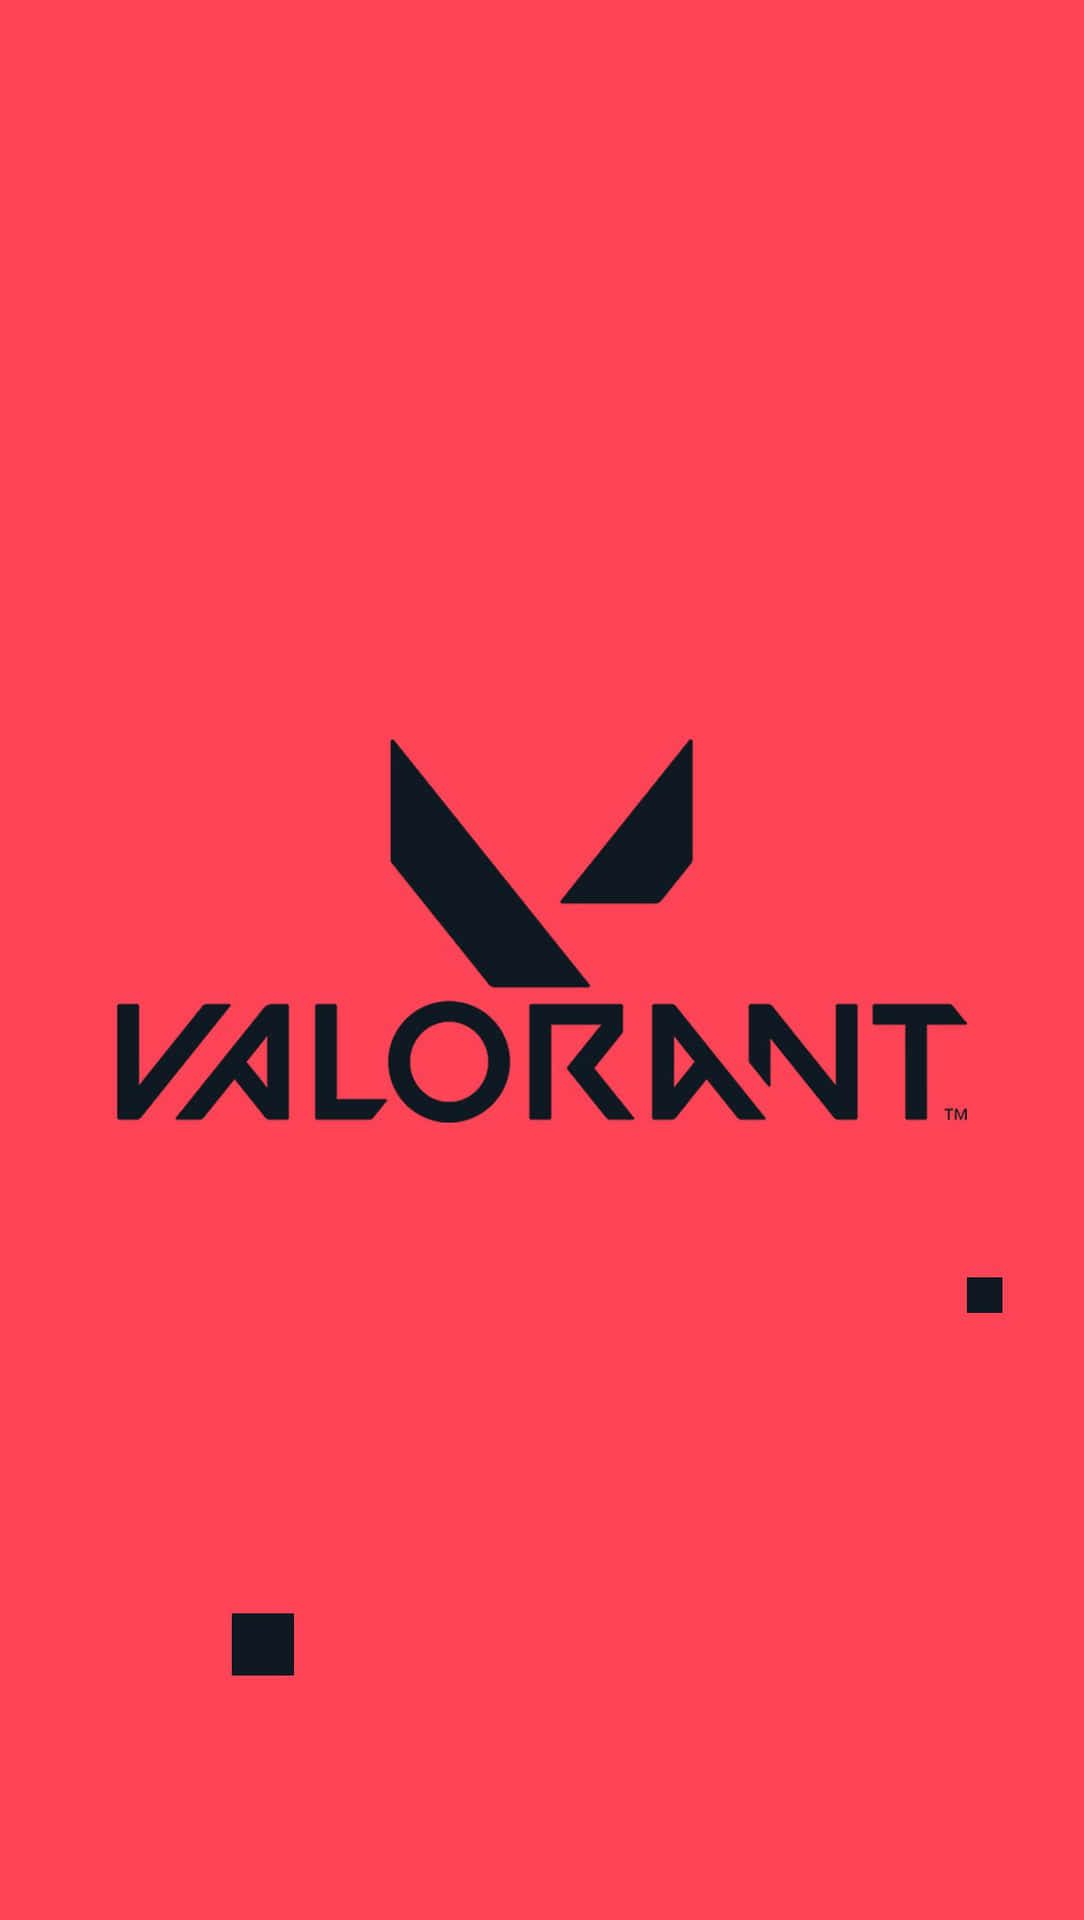 Pixel 3xl Valorant Background Large-Sized Logo